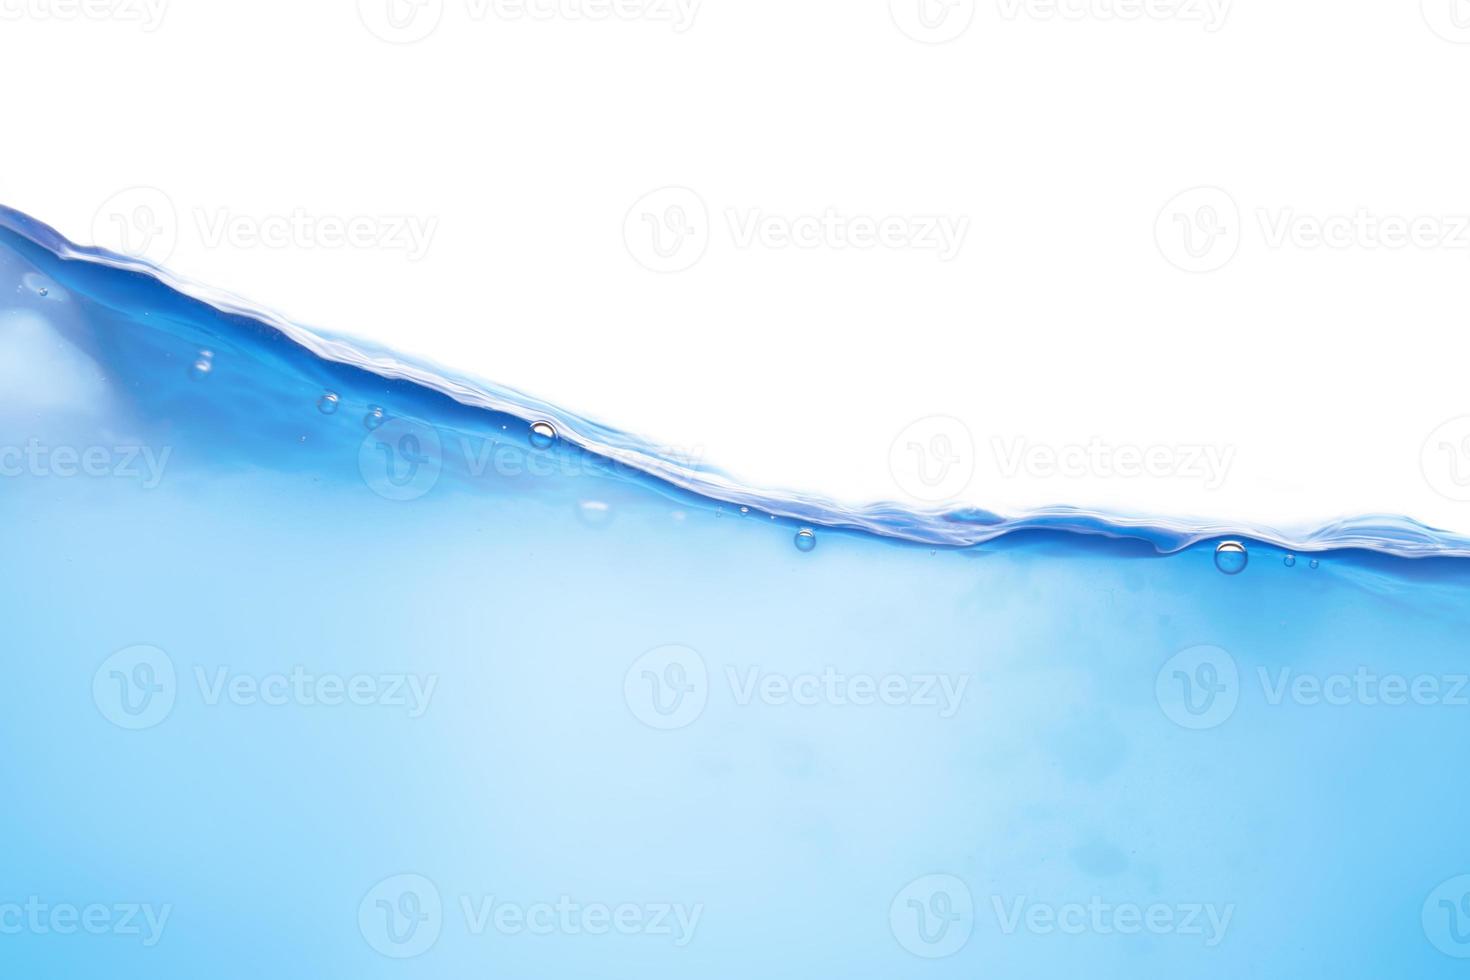 superficie de agua azul en movimiento y burbujas en un fondo blanco foto